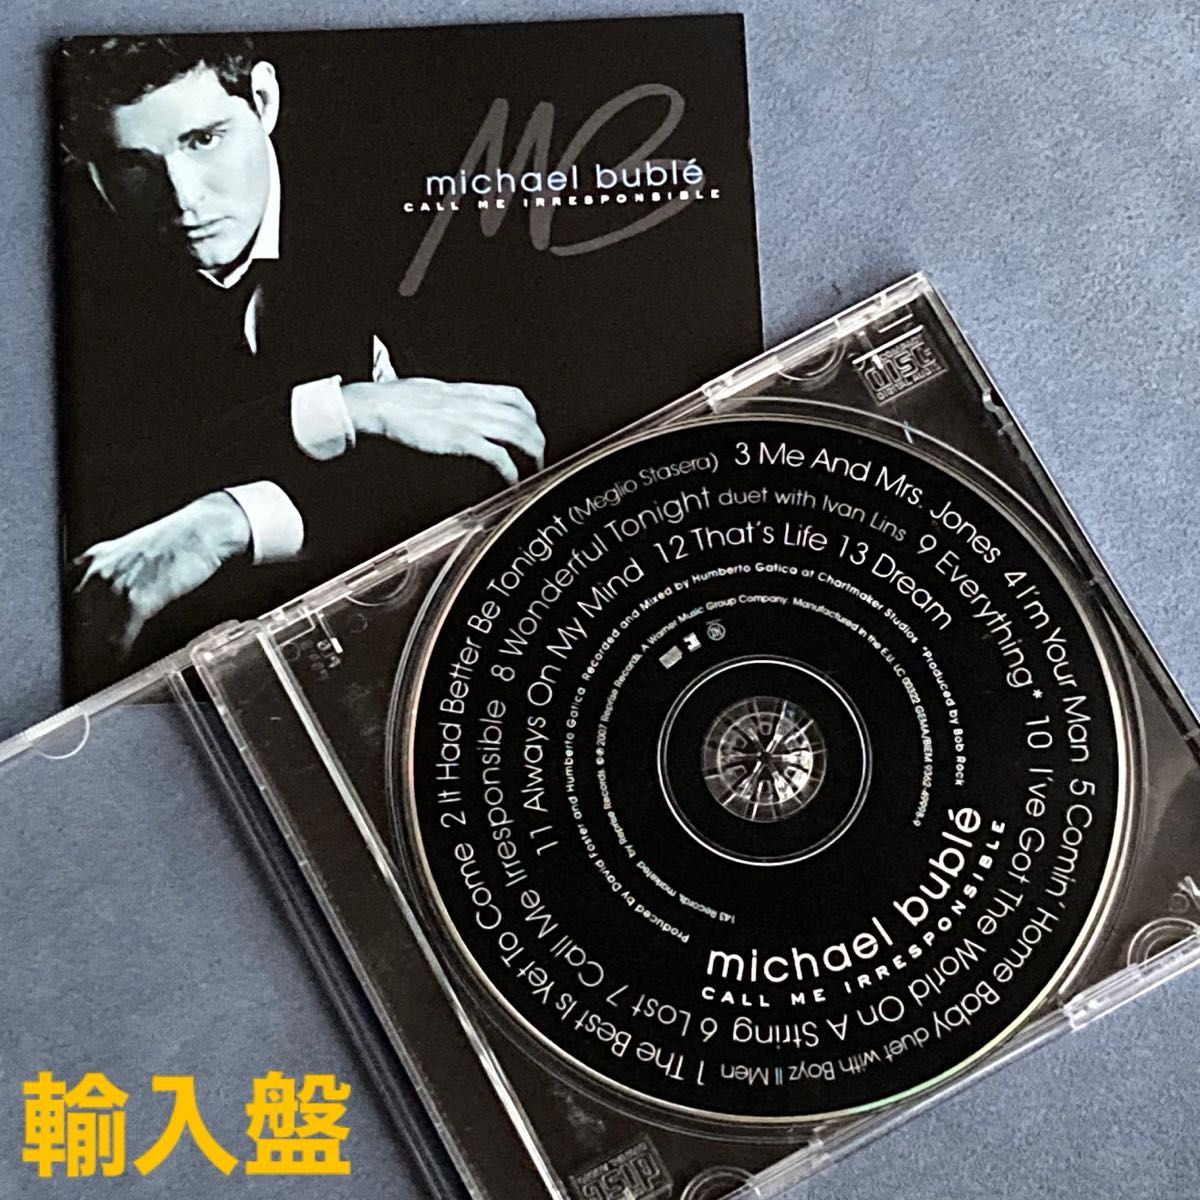 洋楽5枚/マイケル・ブーブレ「ノーバディ・バット・ミー 他 アルバム5枚セット」中古CD